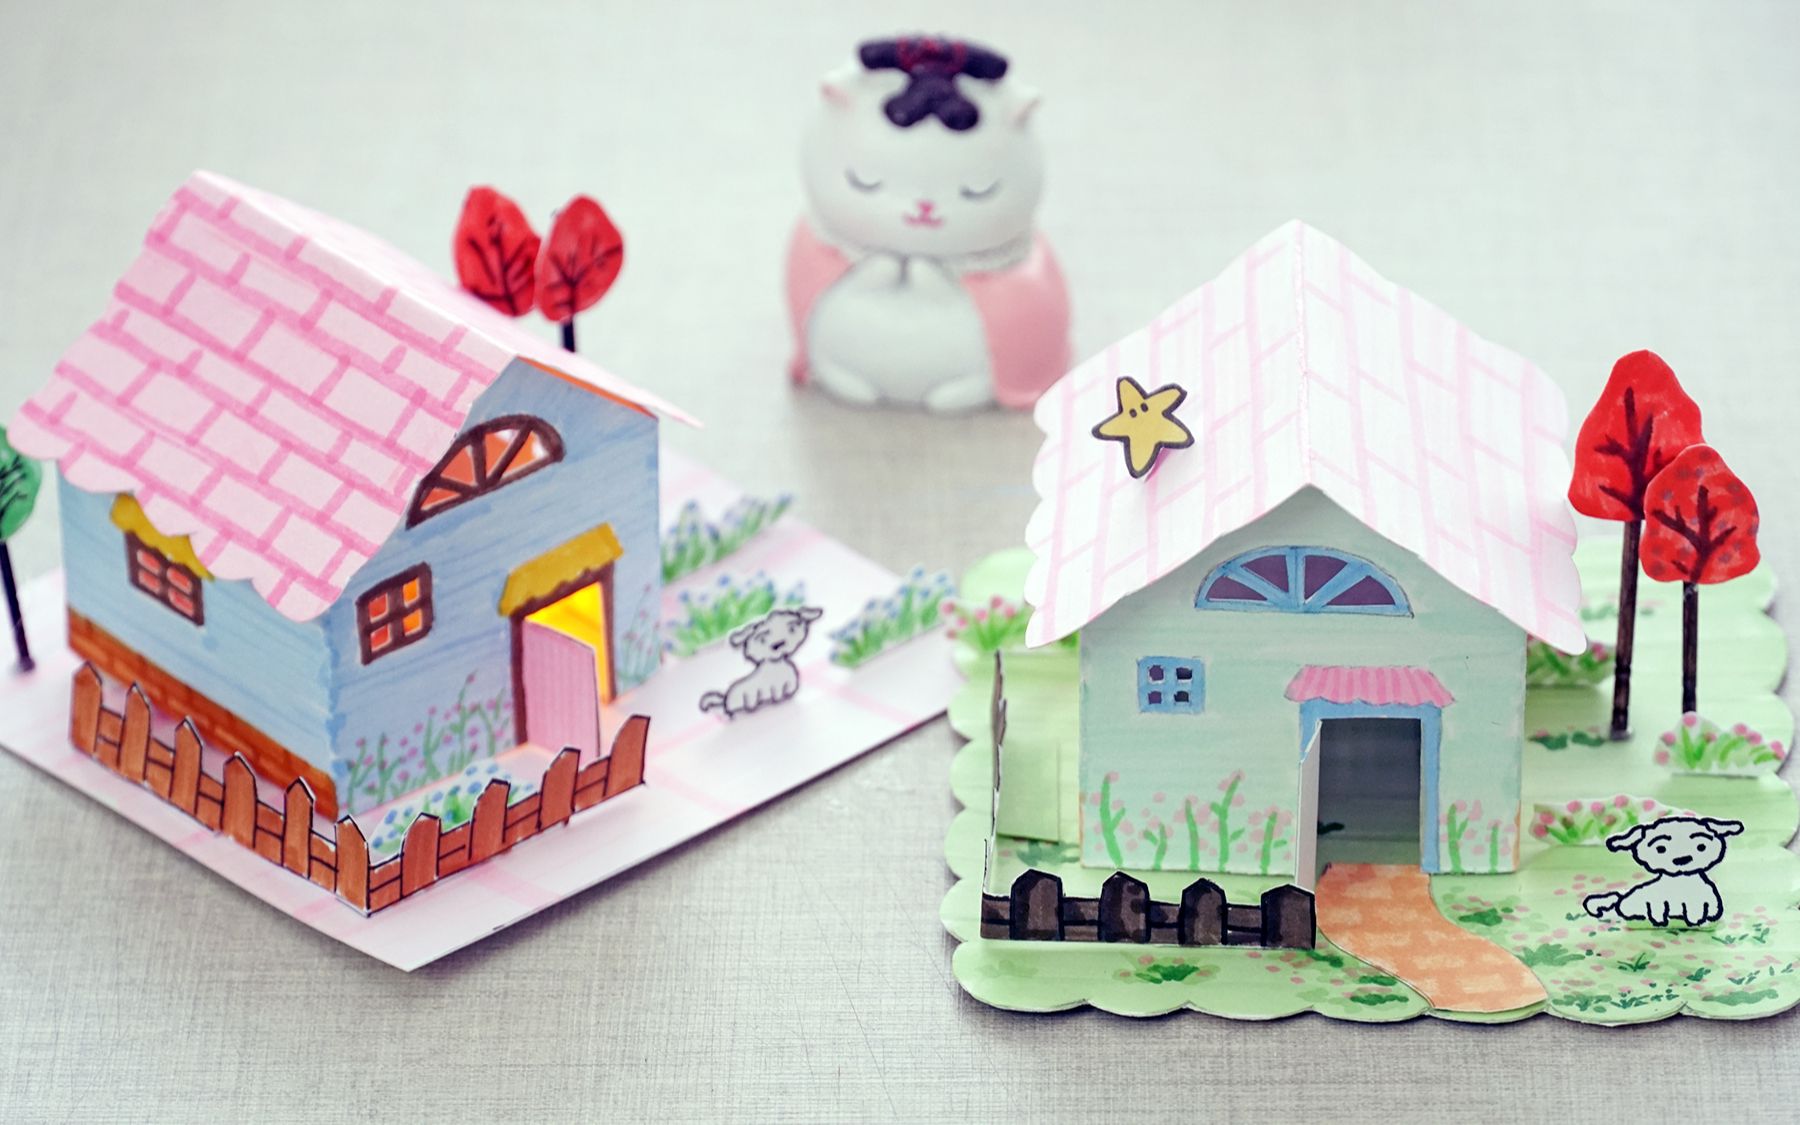 【手工】用卡纸diy迷你小房子模型,步骤挺简单,一起做起来_哔哩哔哩